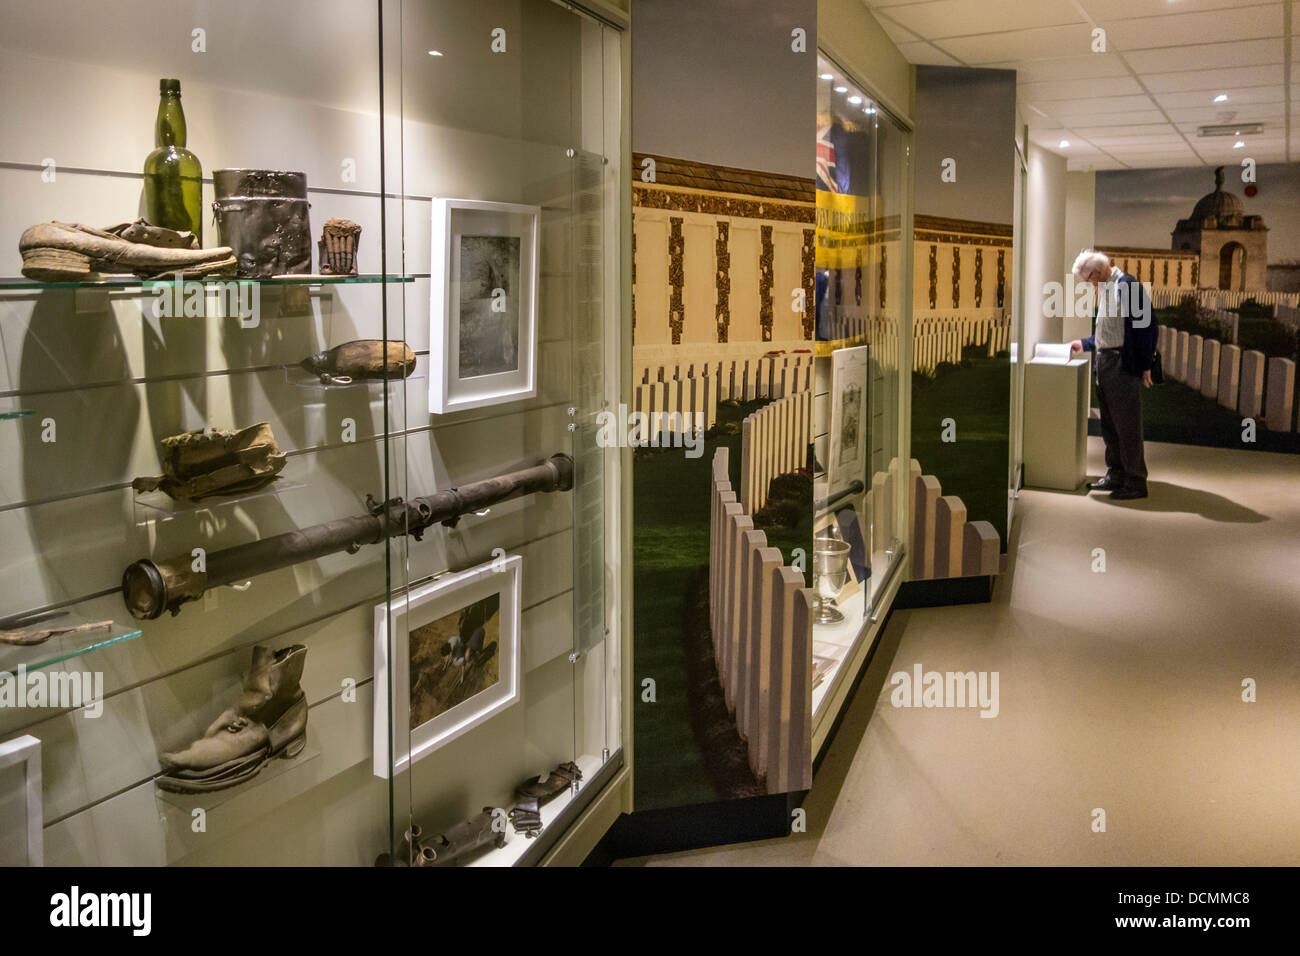 Collection de Première Guerre mondiale, on trouve dans la WW1 Memorial Museum Passchendaele 1917 à Zonnebeke, Flandre occidentale, Belgique Banque D'Images